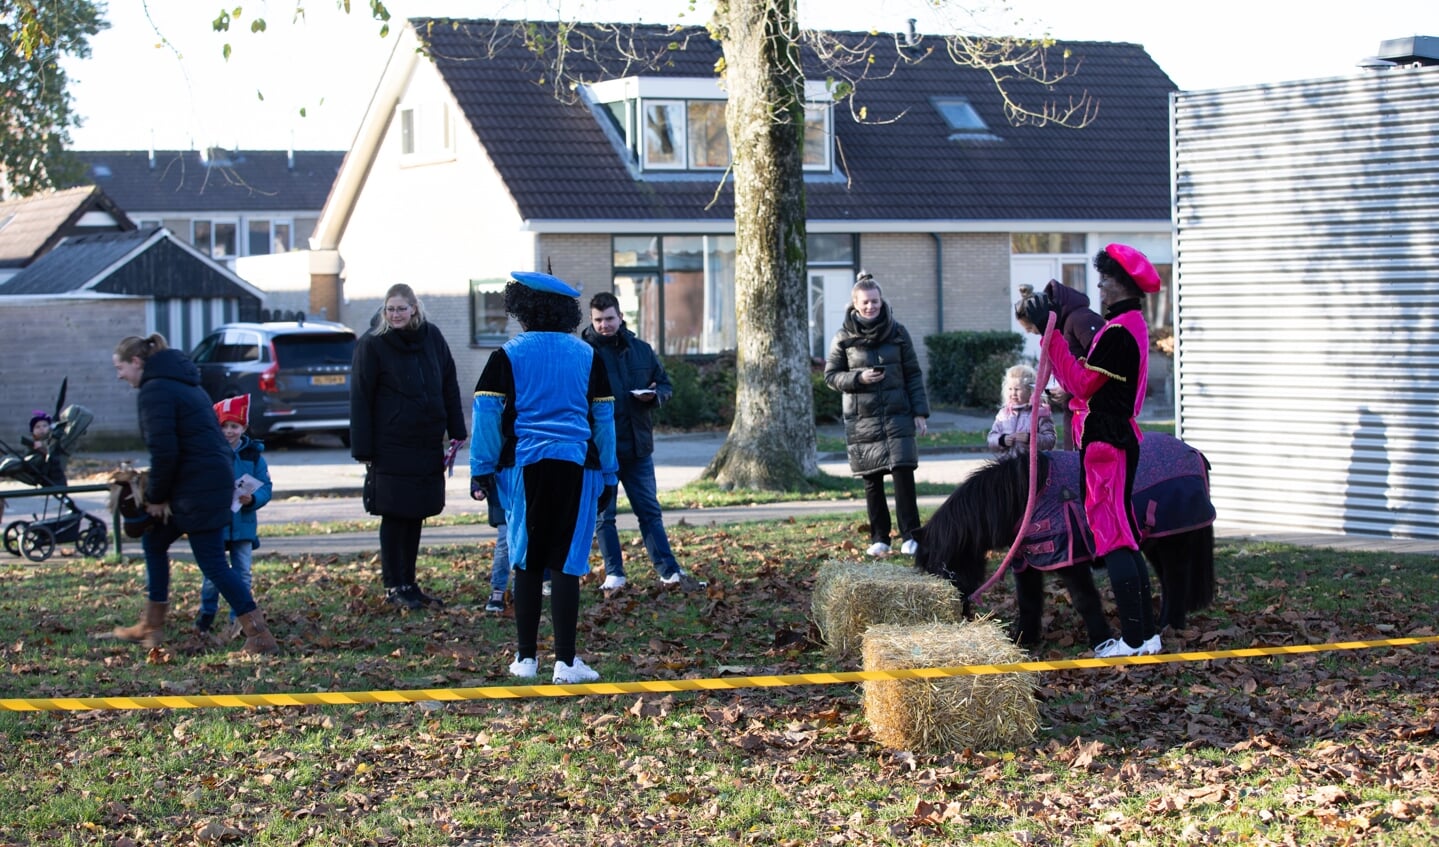 Sinterklaas en de Pieten zorgen voor feest in Oudehaske Foto Bliid Fotografie